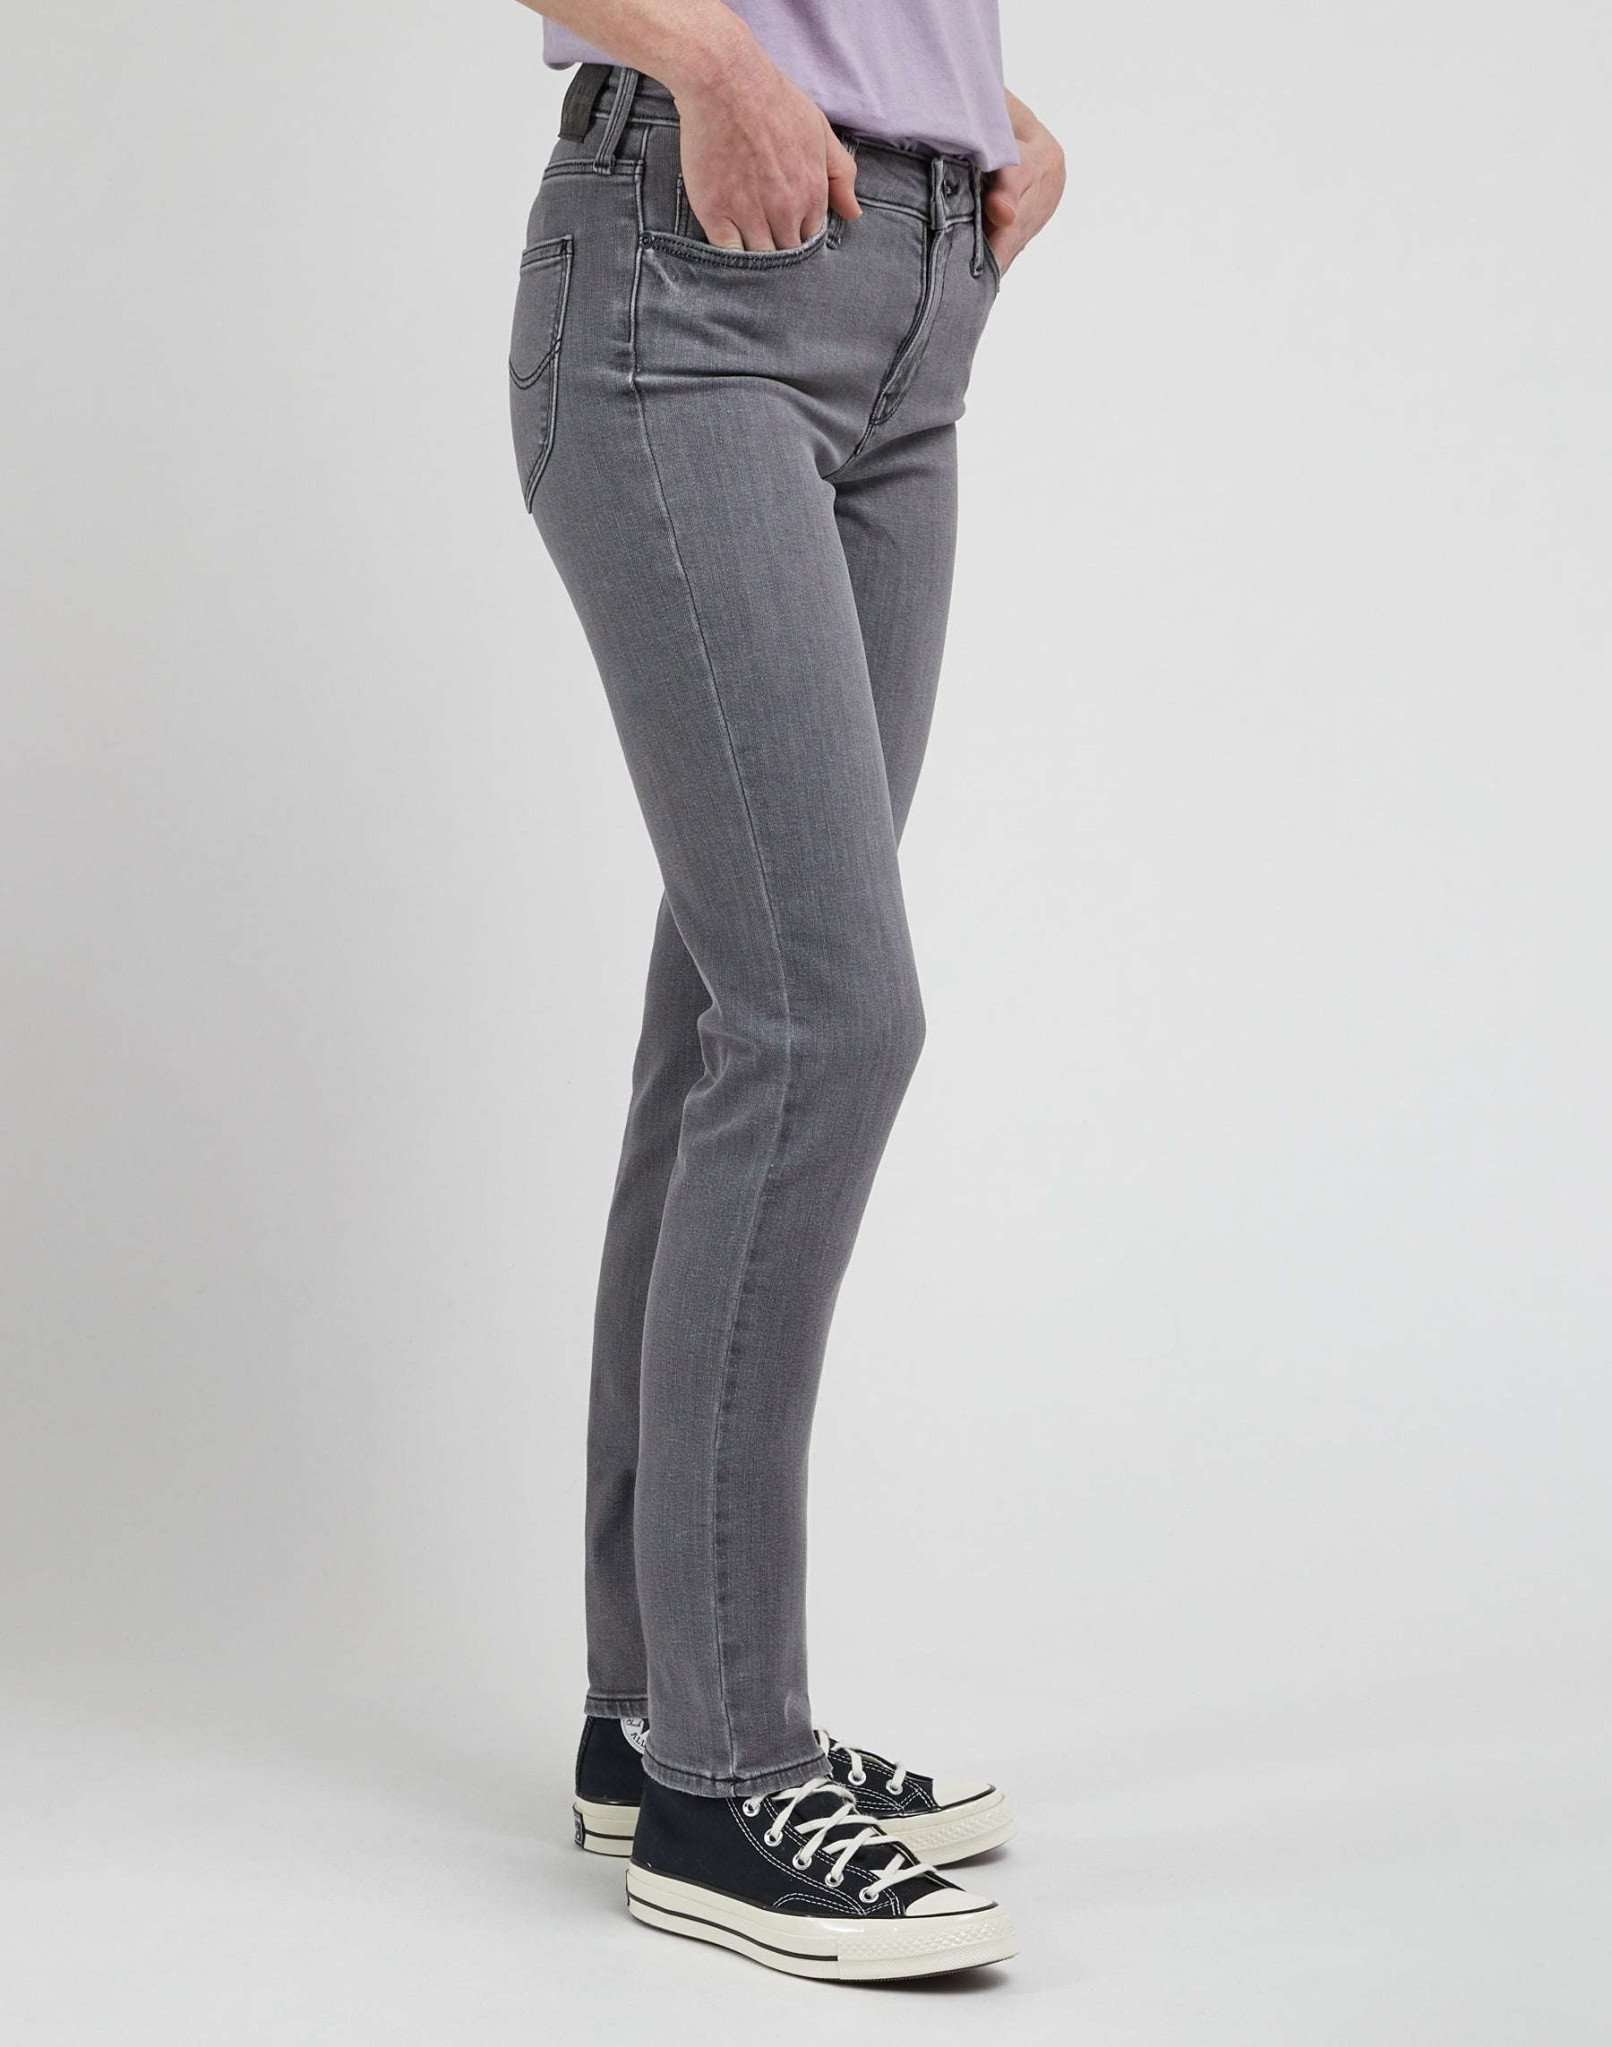 Elly in Regal Grey Jeans Lee   